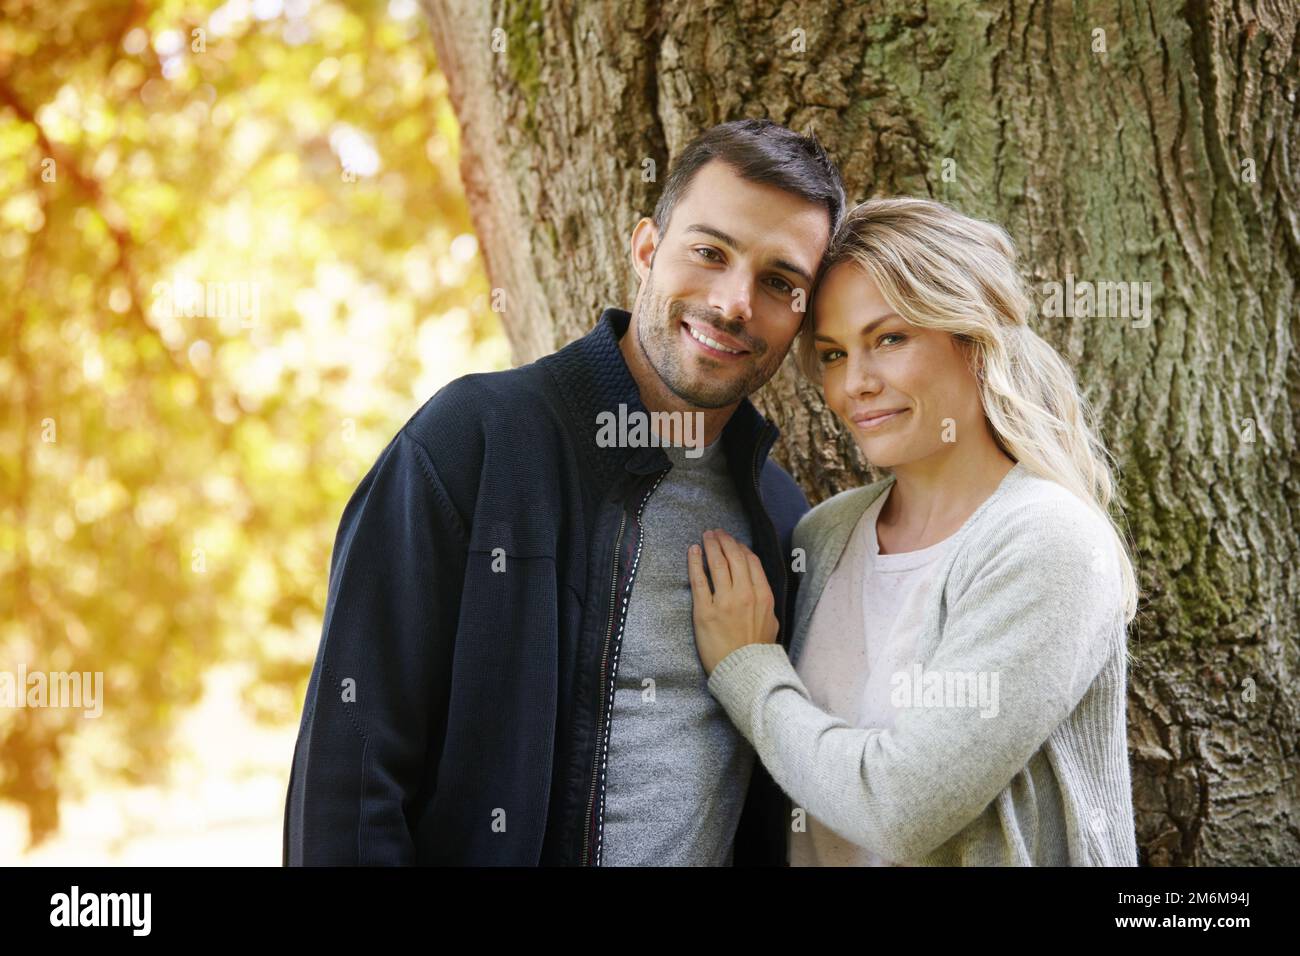 Es como enamorarse todos los días. Retrato de una pareja joven sonriente disfrutando de un día en el parque juntos. Foto de stock